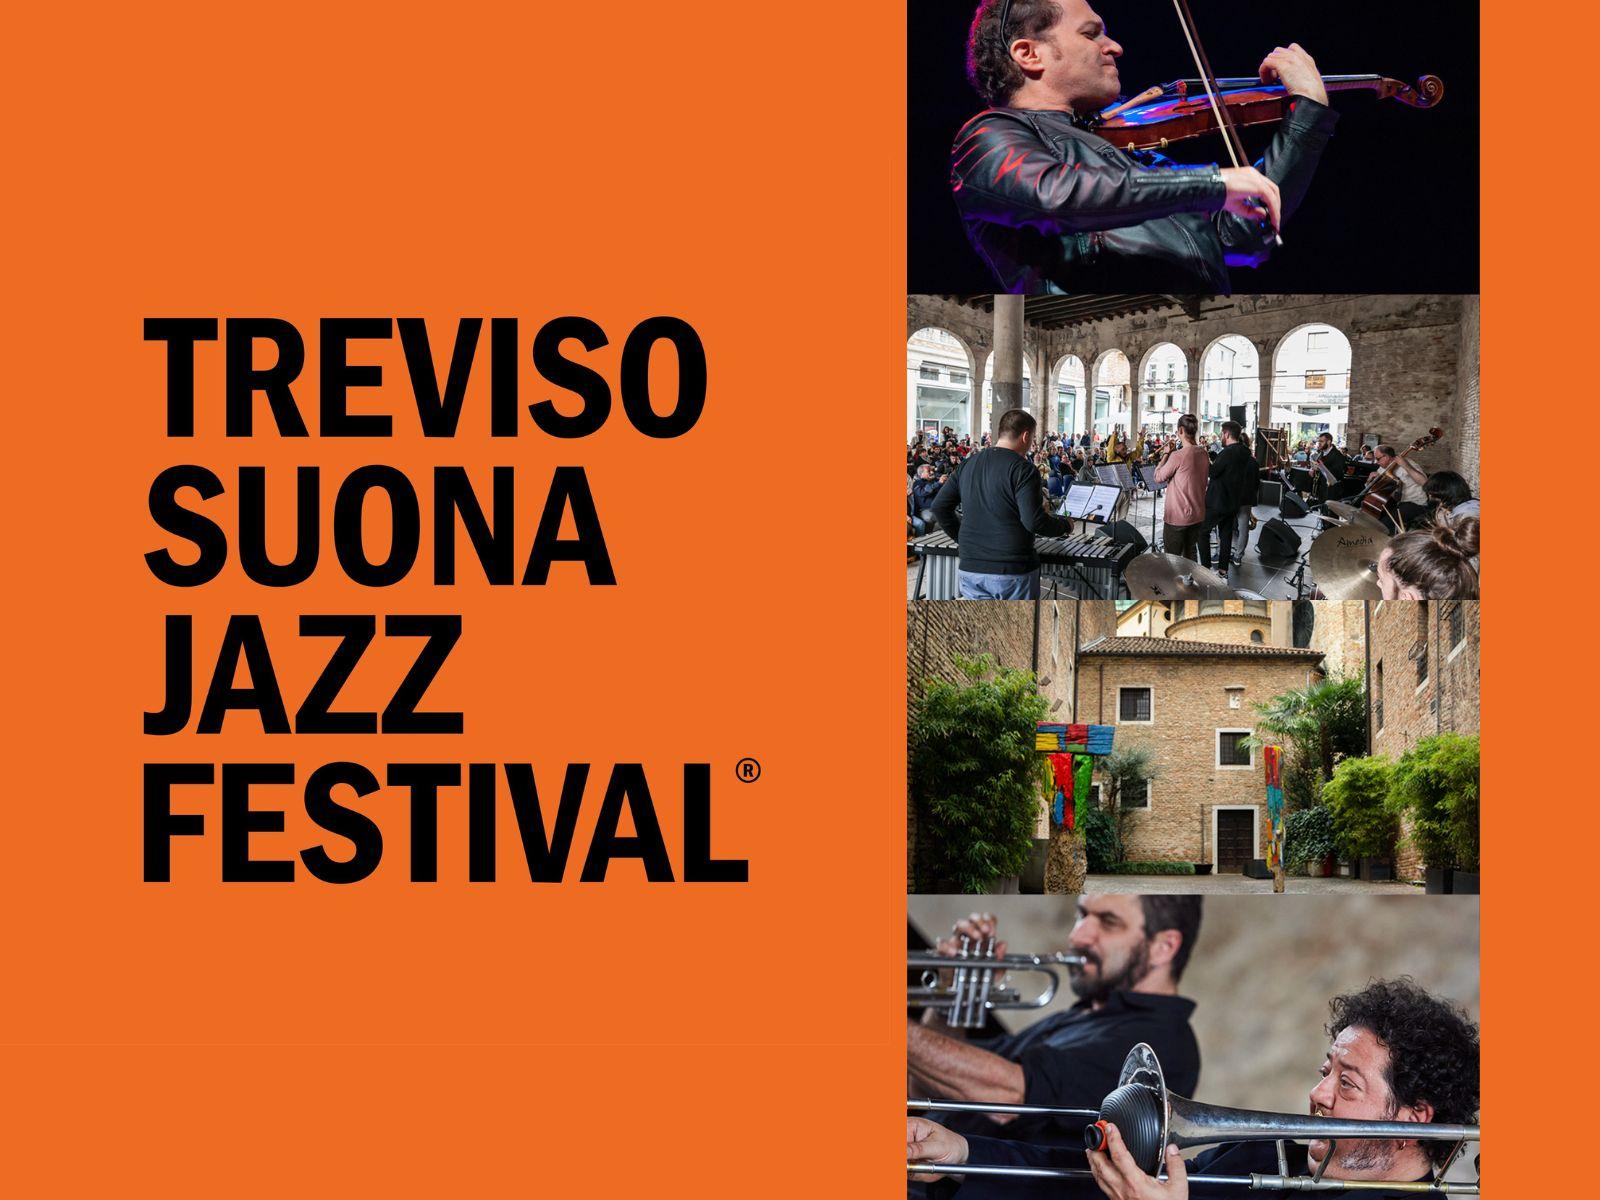 Treviso suona Jazz Festival 